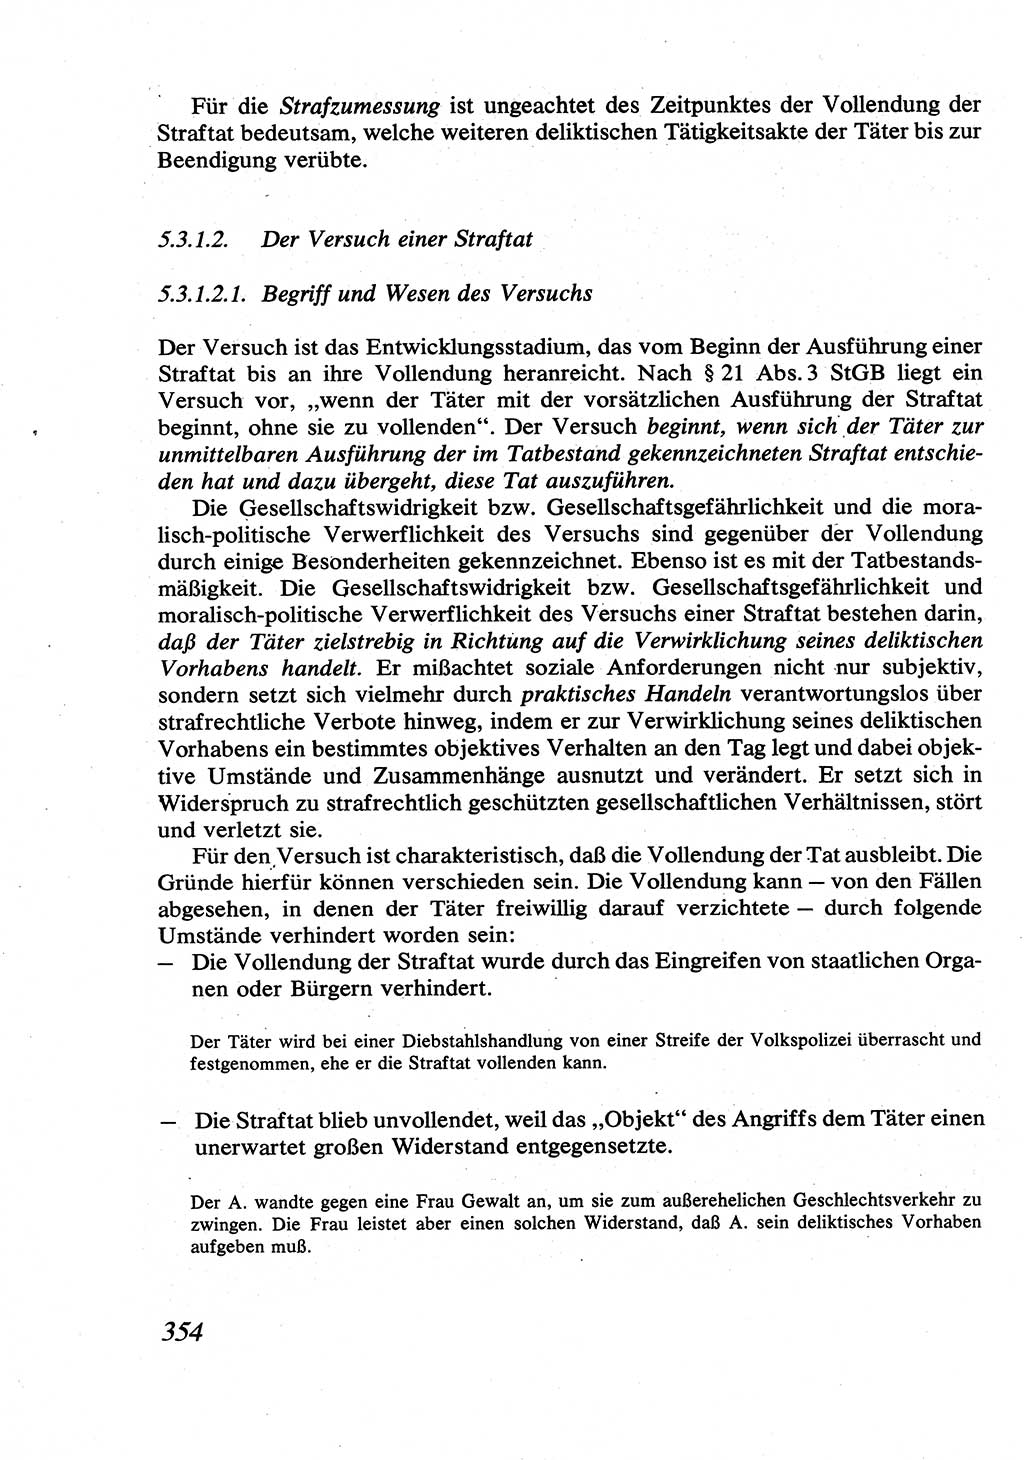 Strafrecht [Deutsche Demokratische Republik (DDR)], Allgemeiner Teil, Lehrbuch 1976, Seite 354 (Strafr. DDR AT Lb. 1976, S. 354)